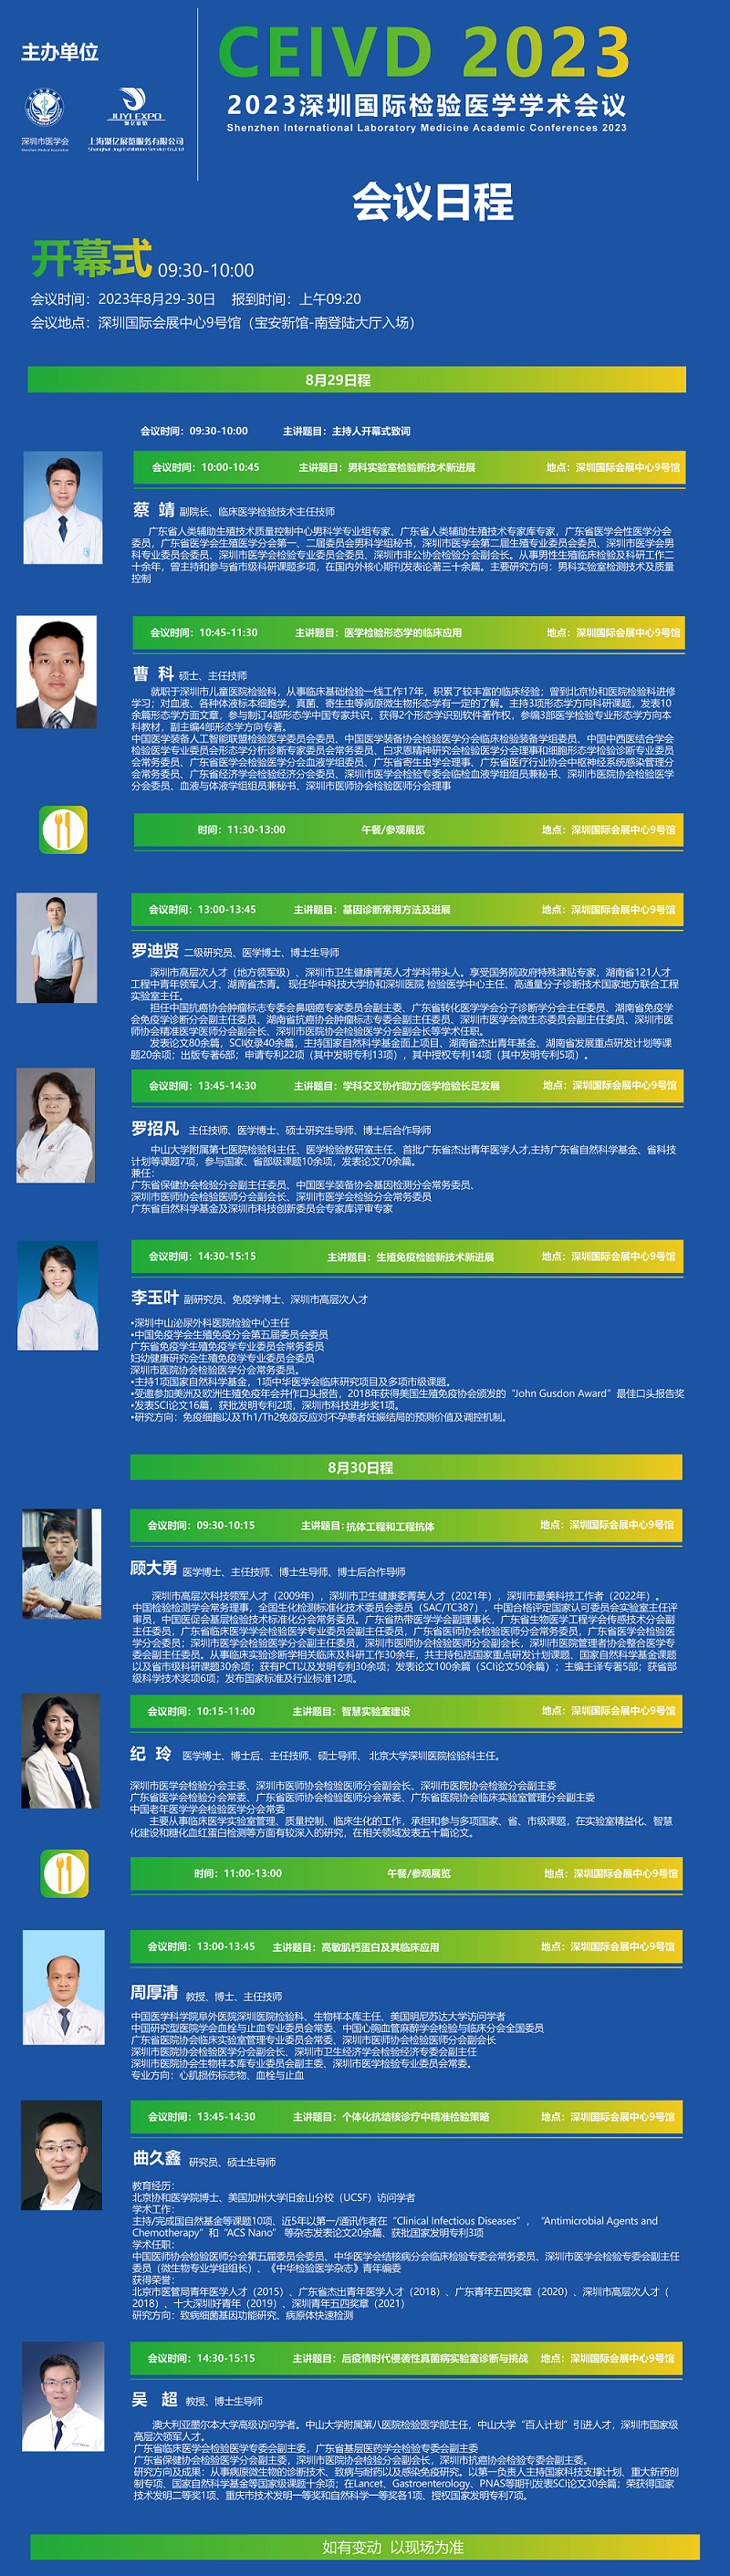 2023深圳国际检验医学学术会议日程暨专家介绍